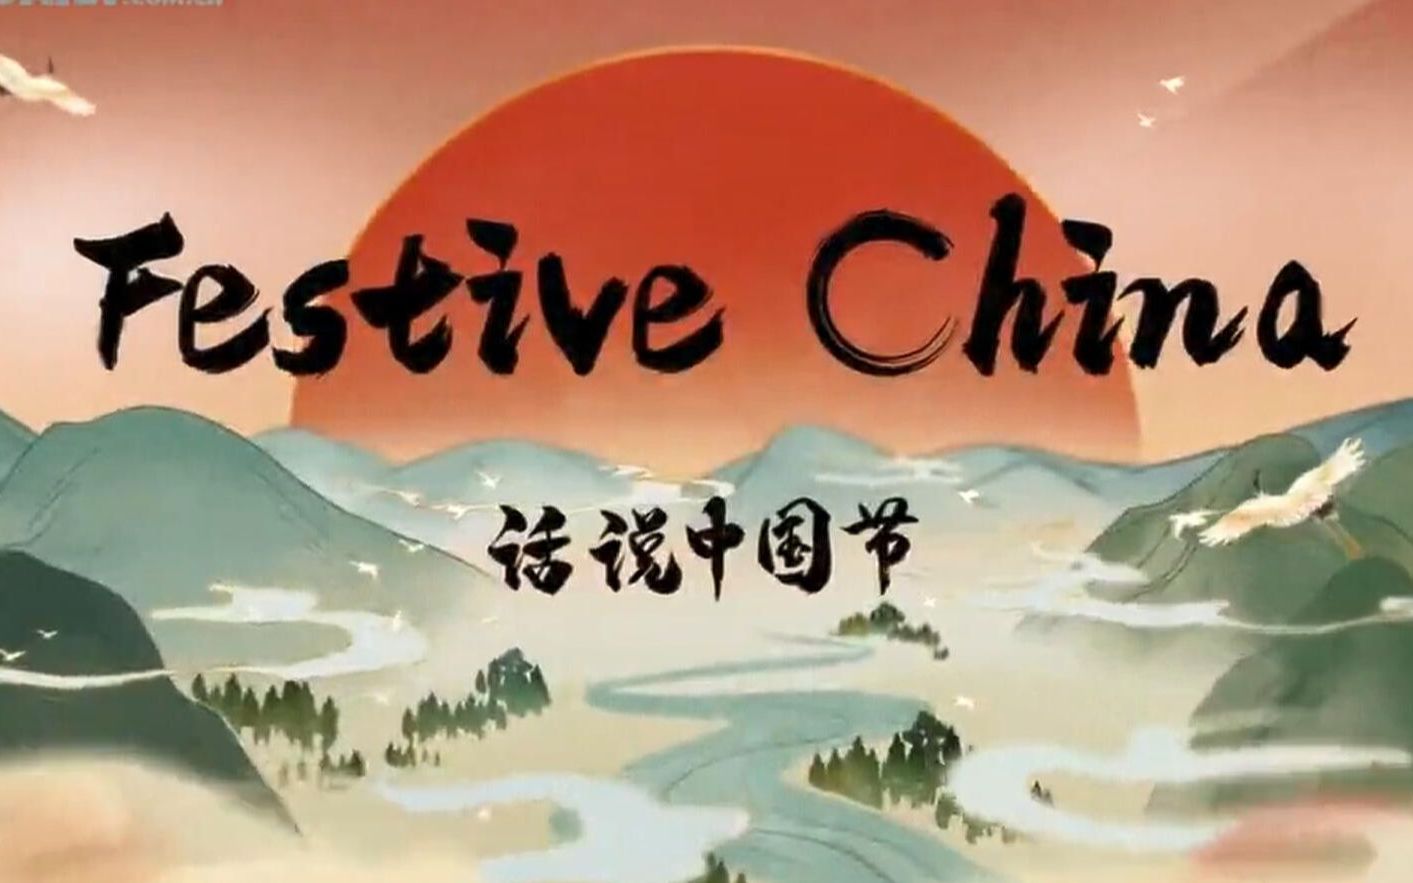 《话说中国节 | Festive China》全系列双语12集！绝佳听力素材！不刷十遍都亏了！